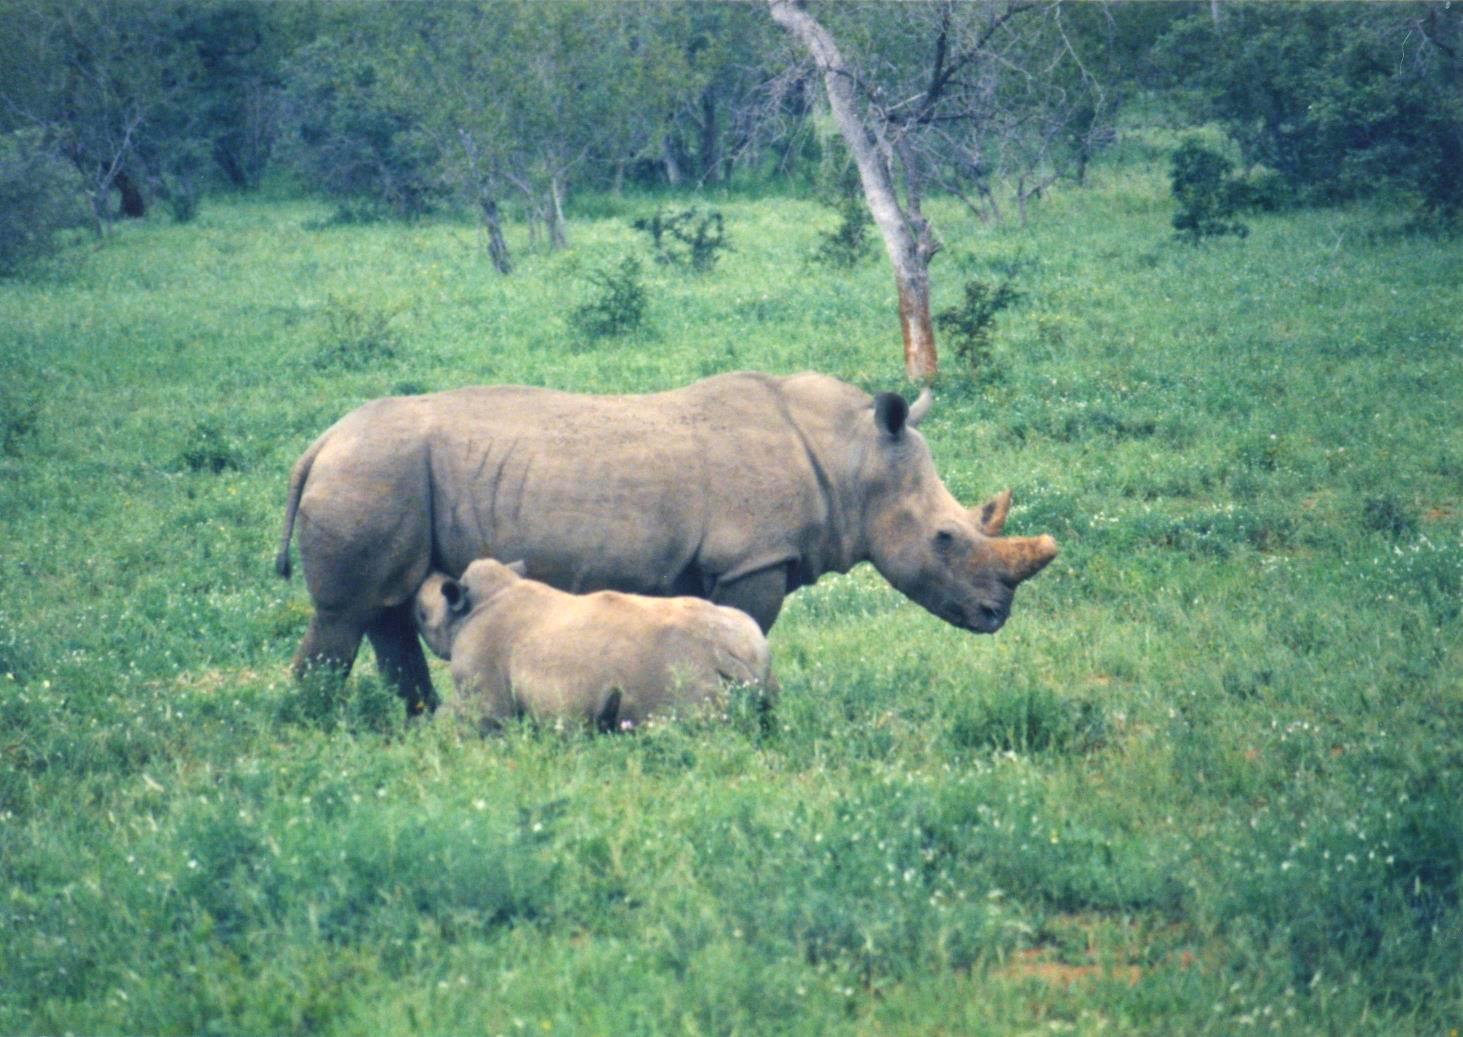 Rhino calf nursing